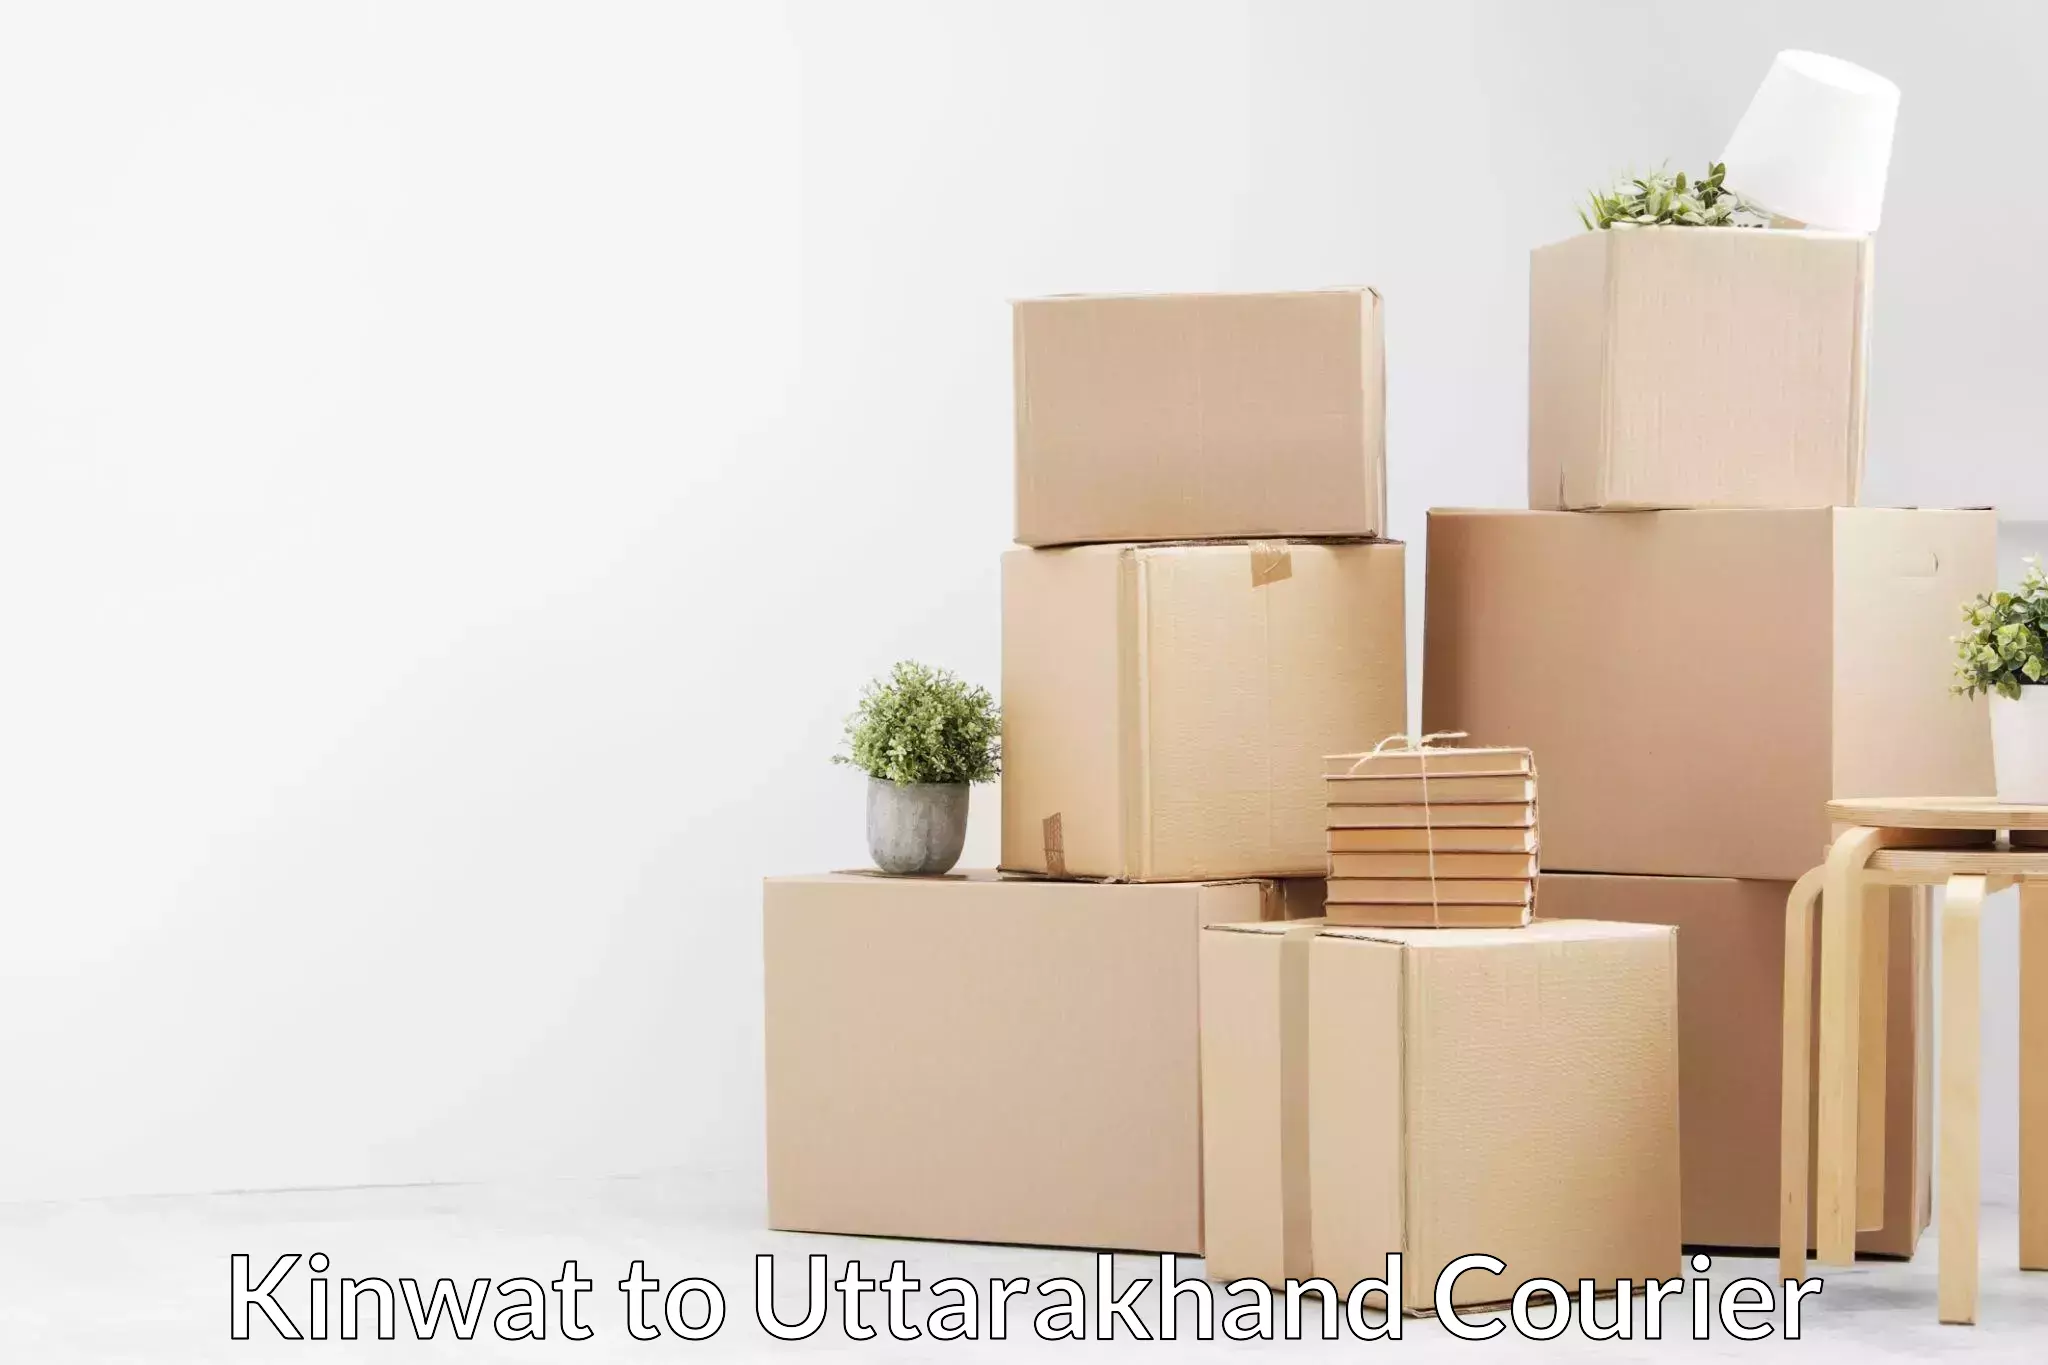 Home goods moving company Kinwat to Uttarakhand